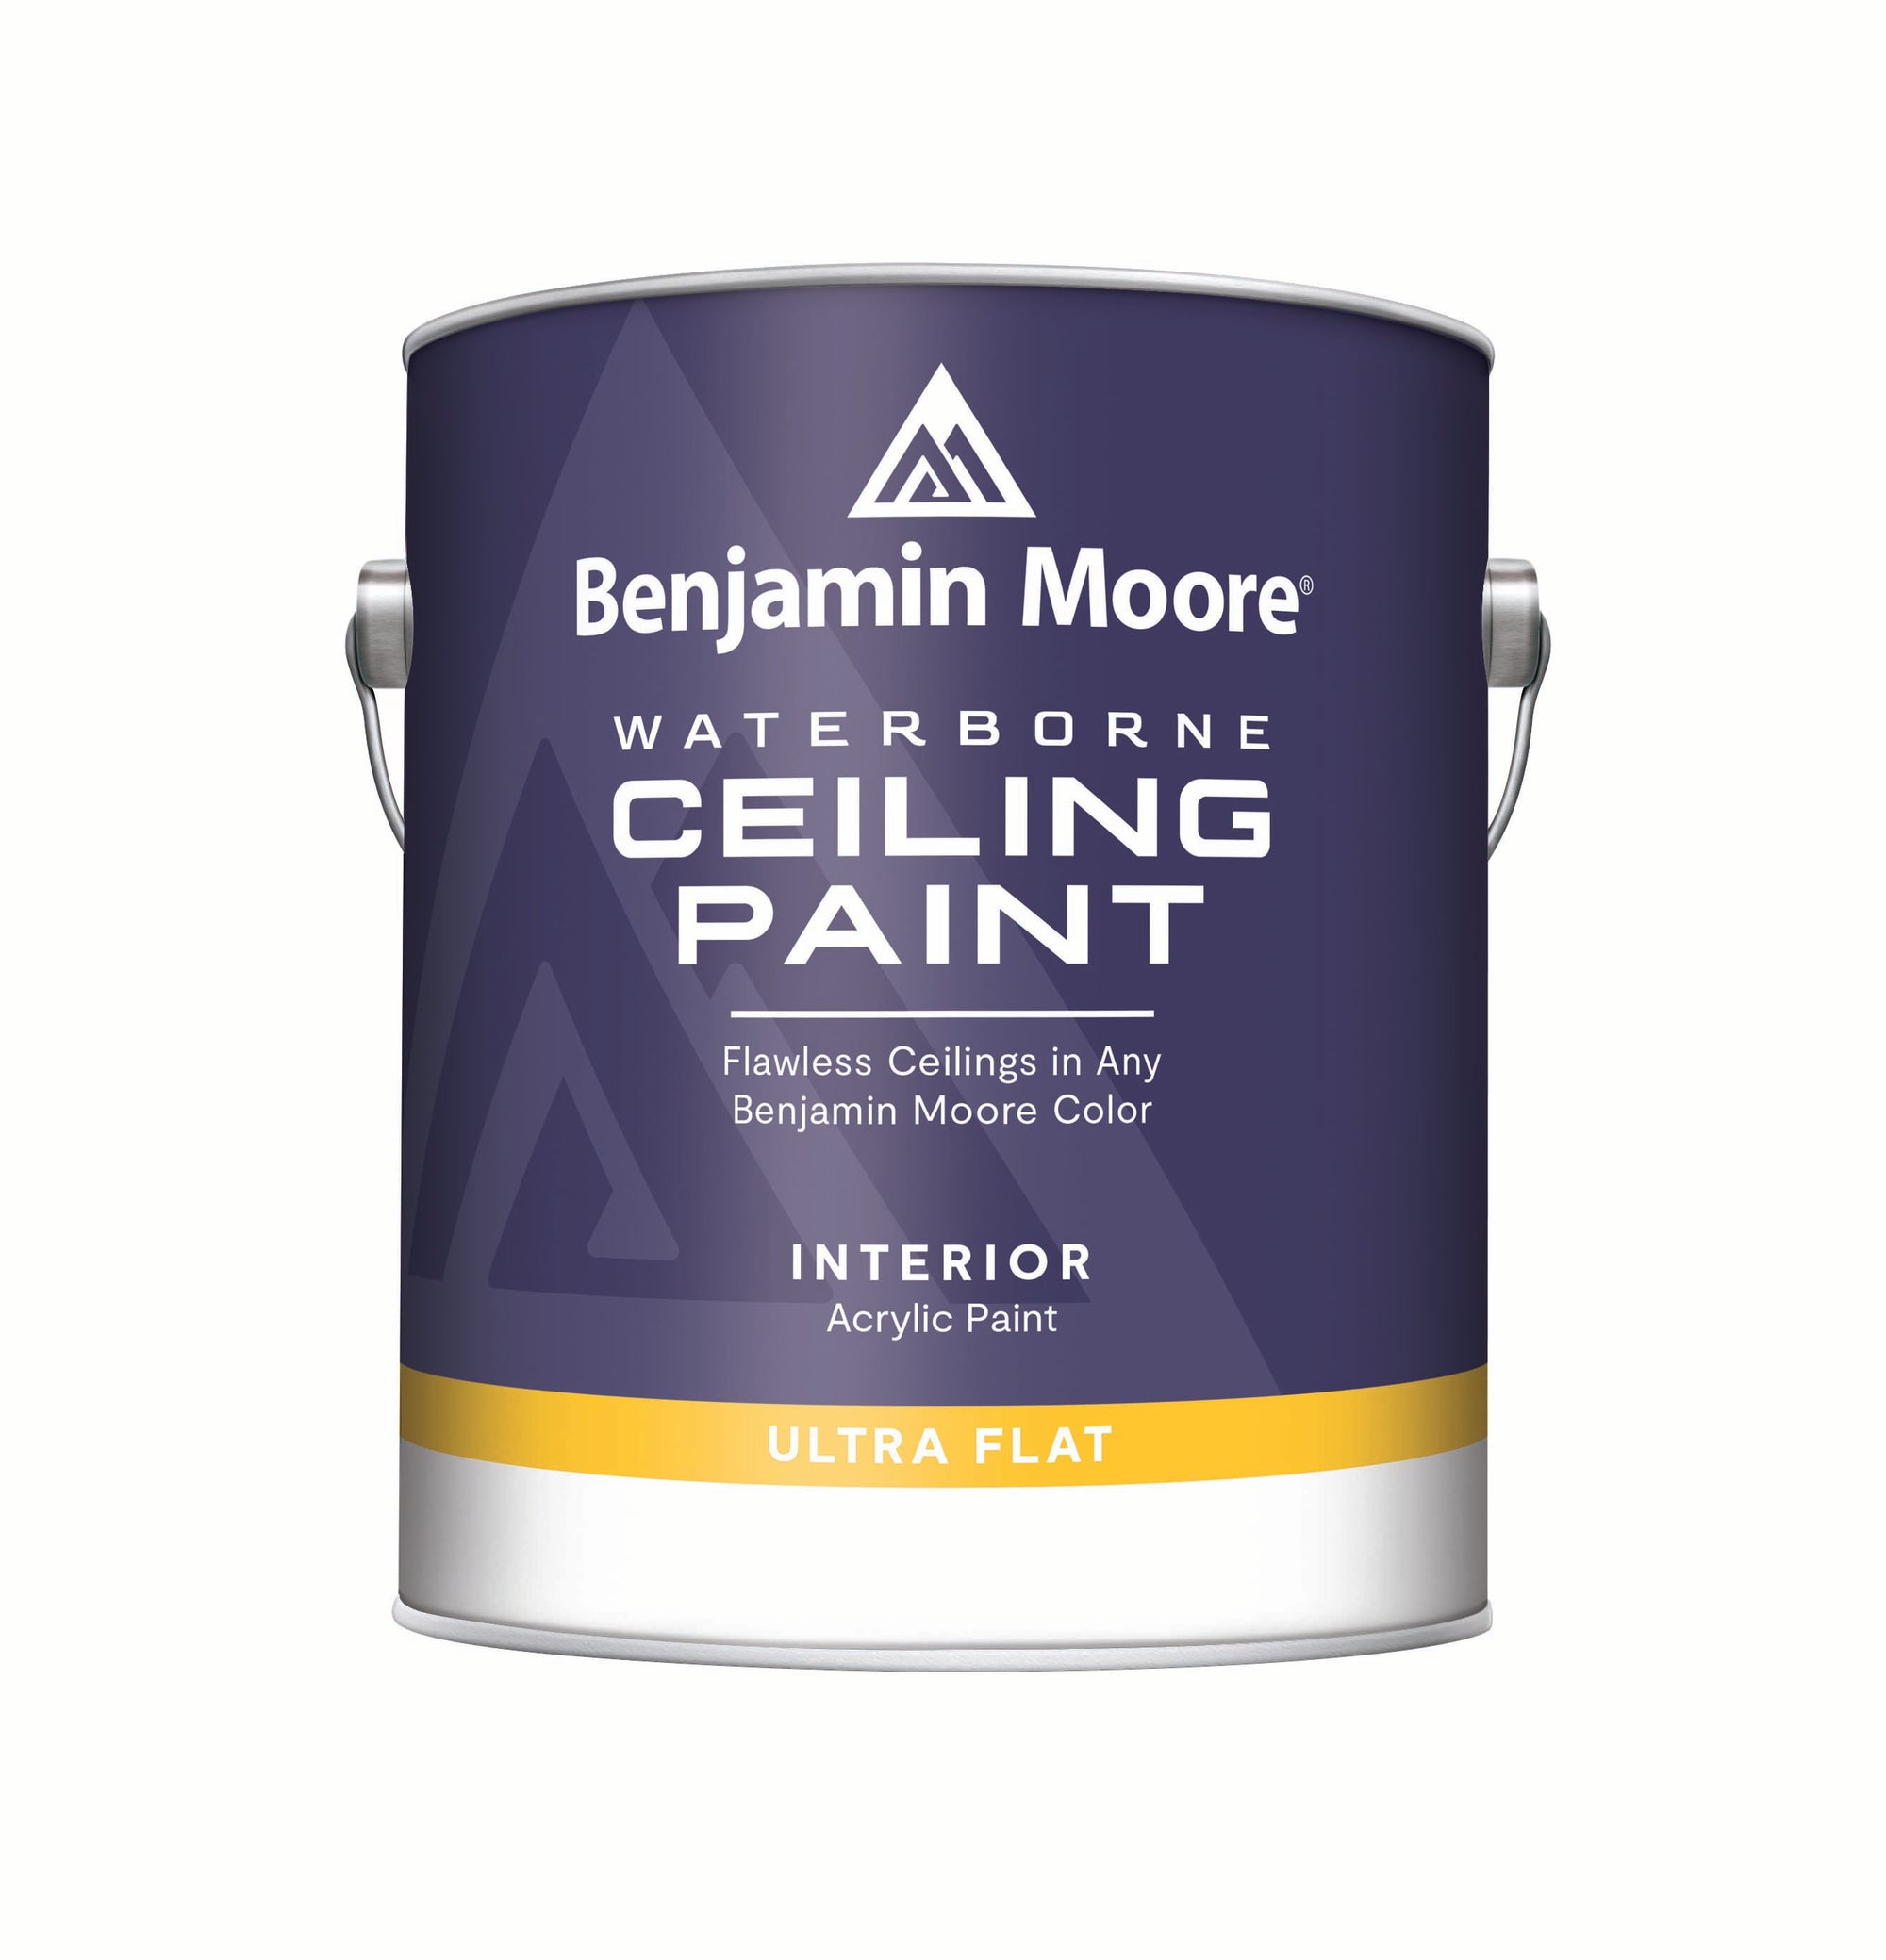 Benjamin Moore - Waterborne Ceiling Paint